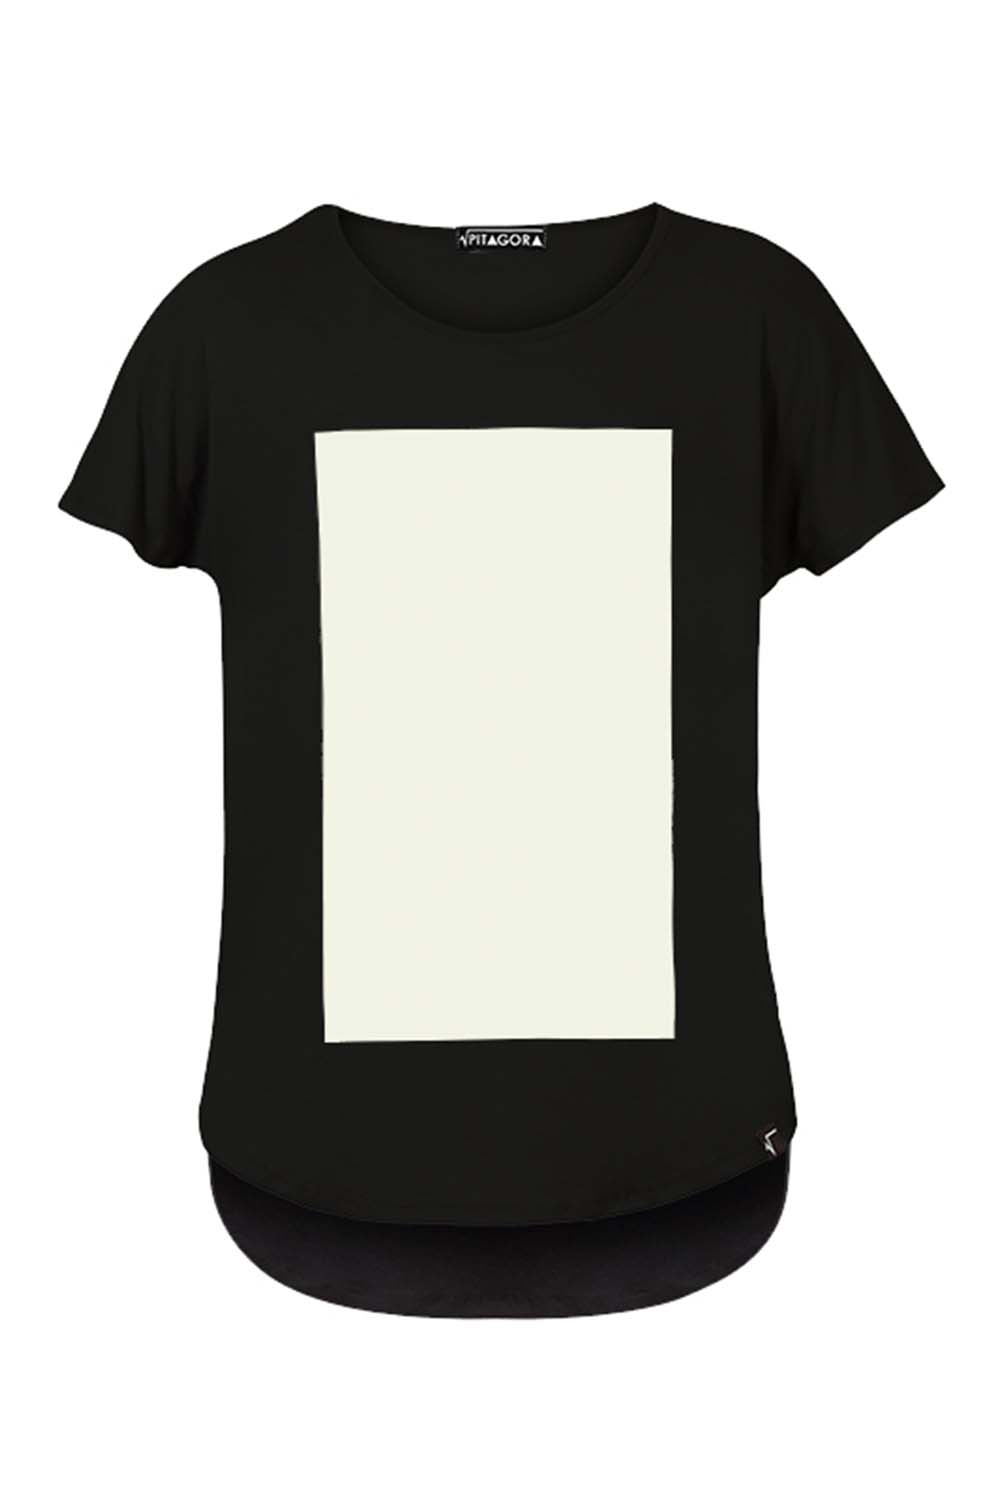 imagen de producto de la camiseta quadrilaterus negro y blanco